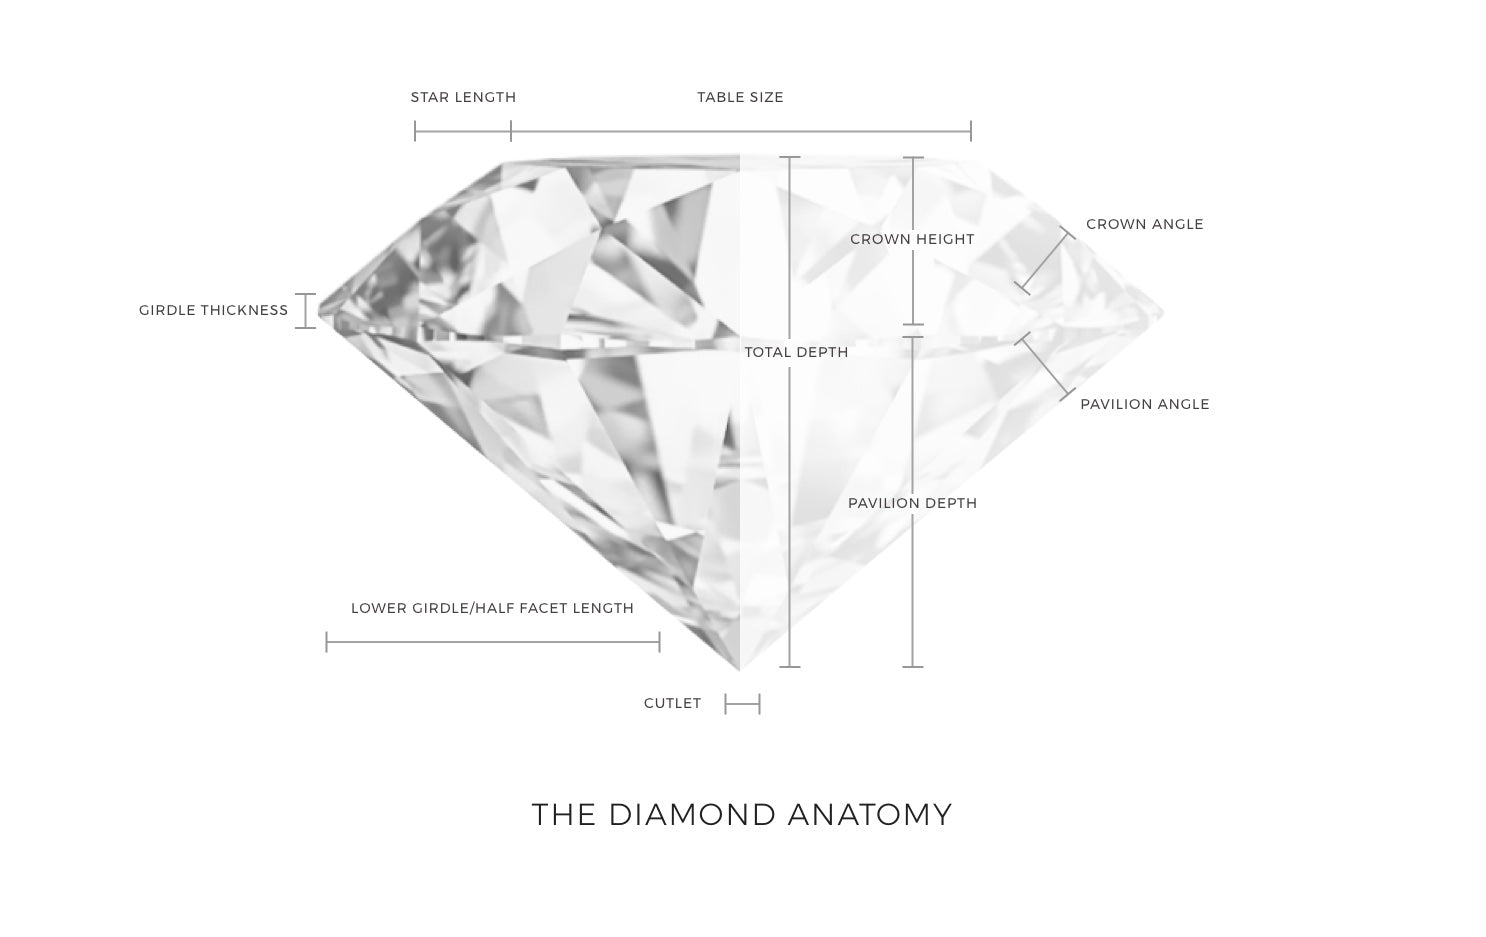 The Diamond Anatomy